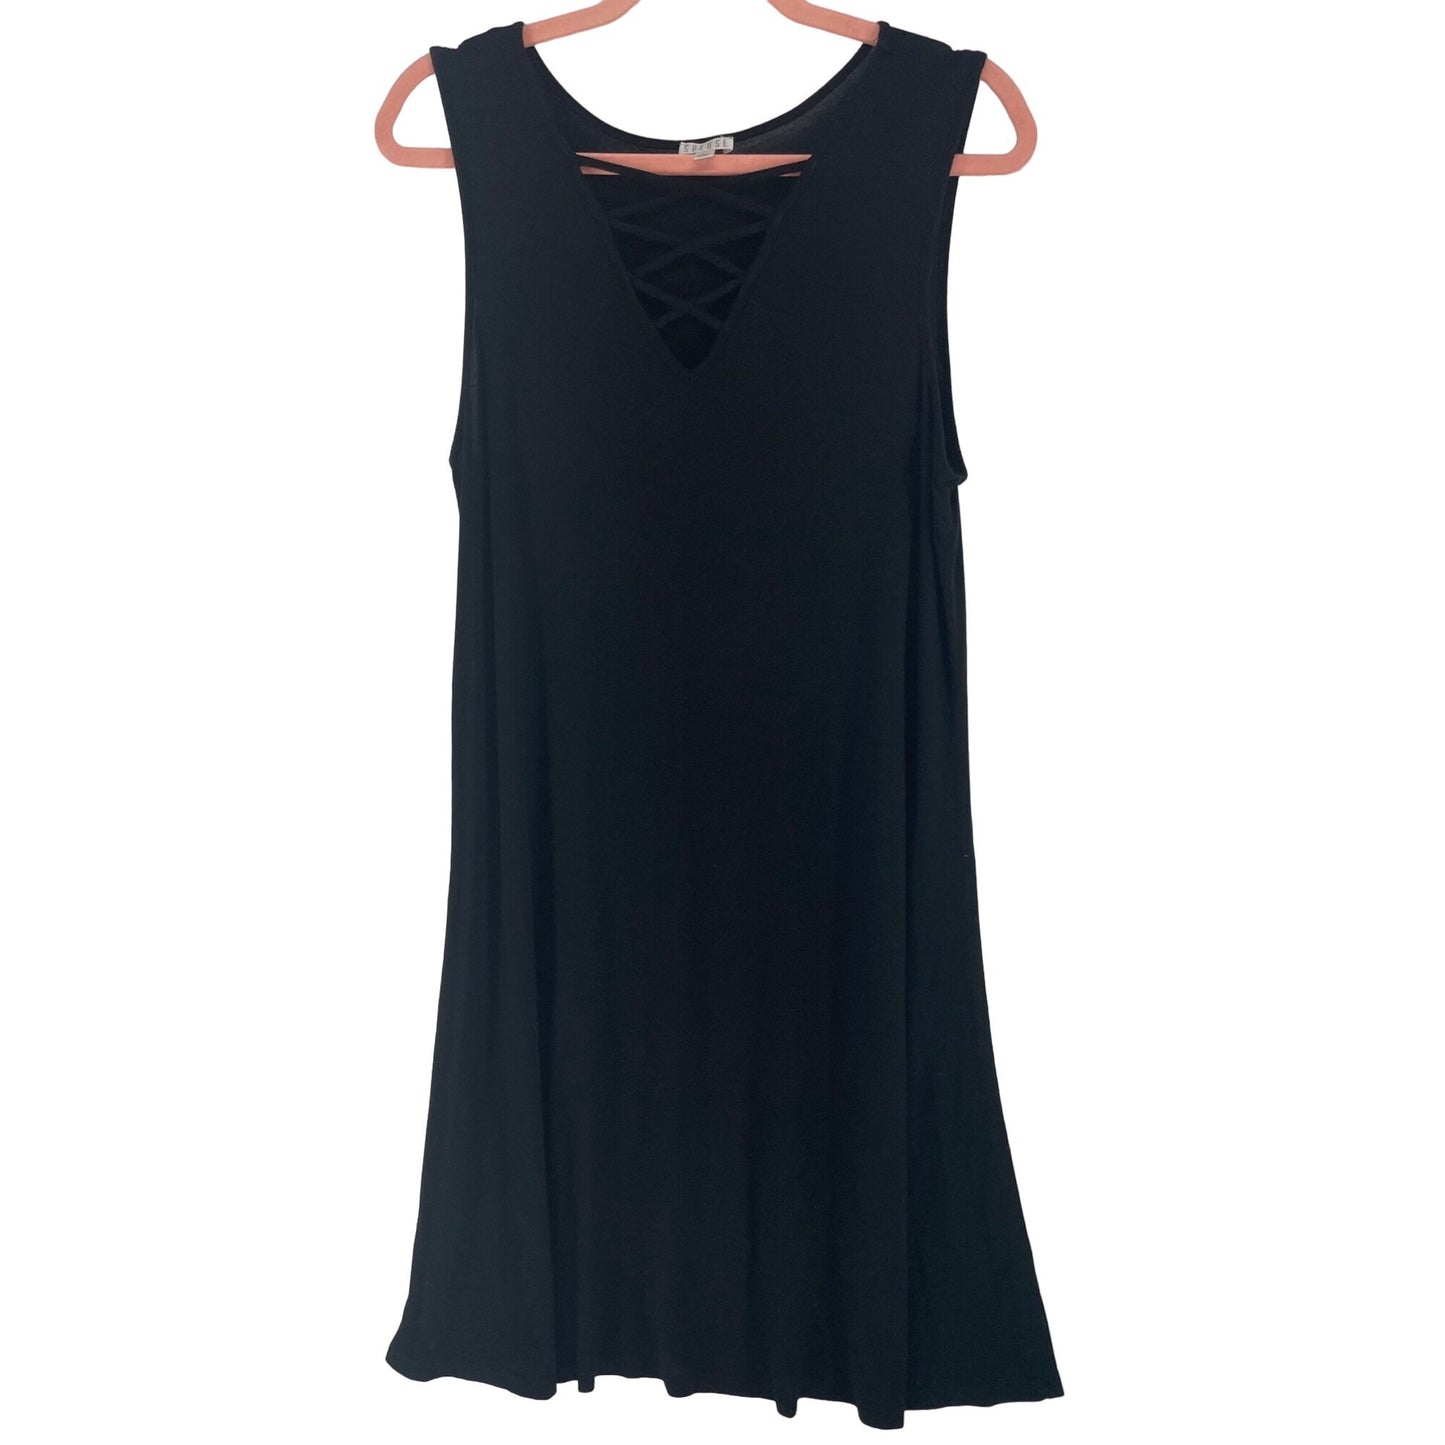 Spence Women's Size Large Black Sleeveless A-Line V-Neck Stretchy Midi Dress